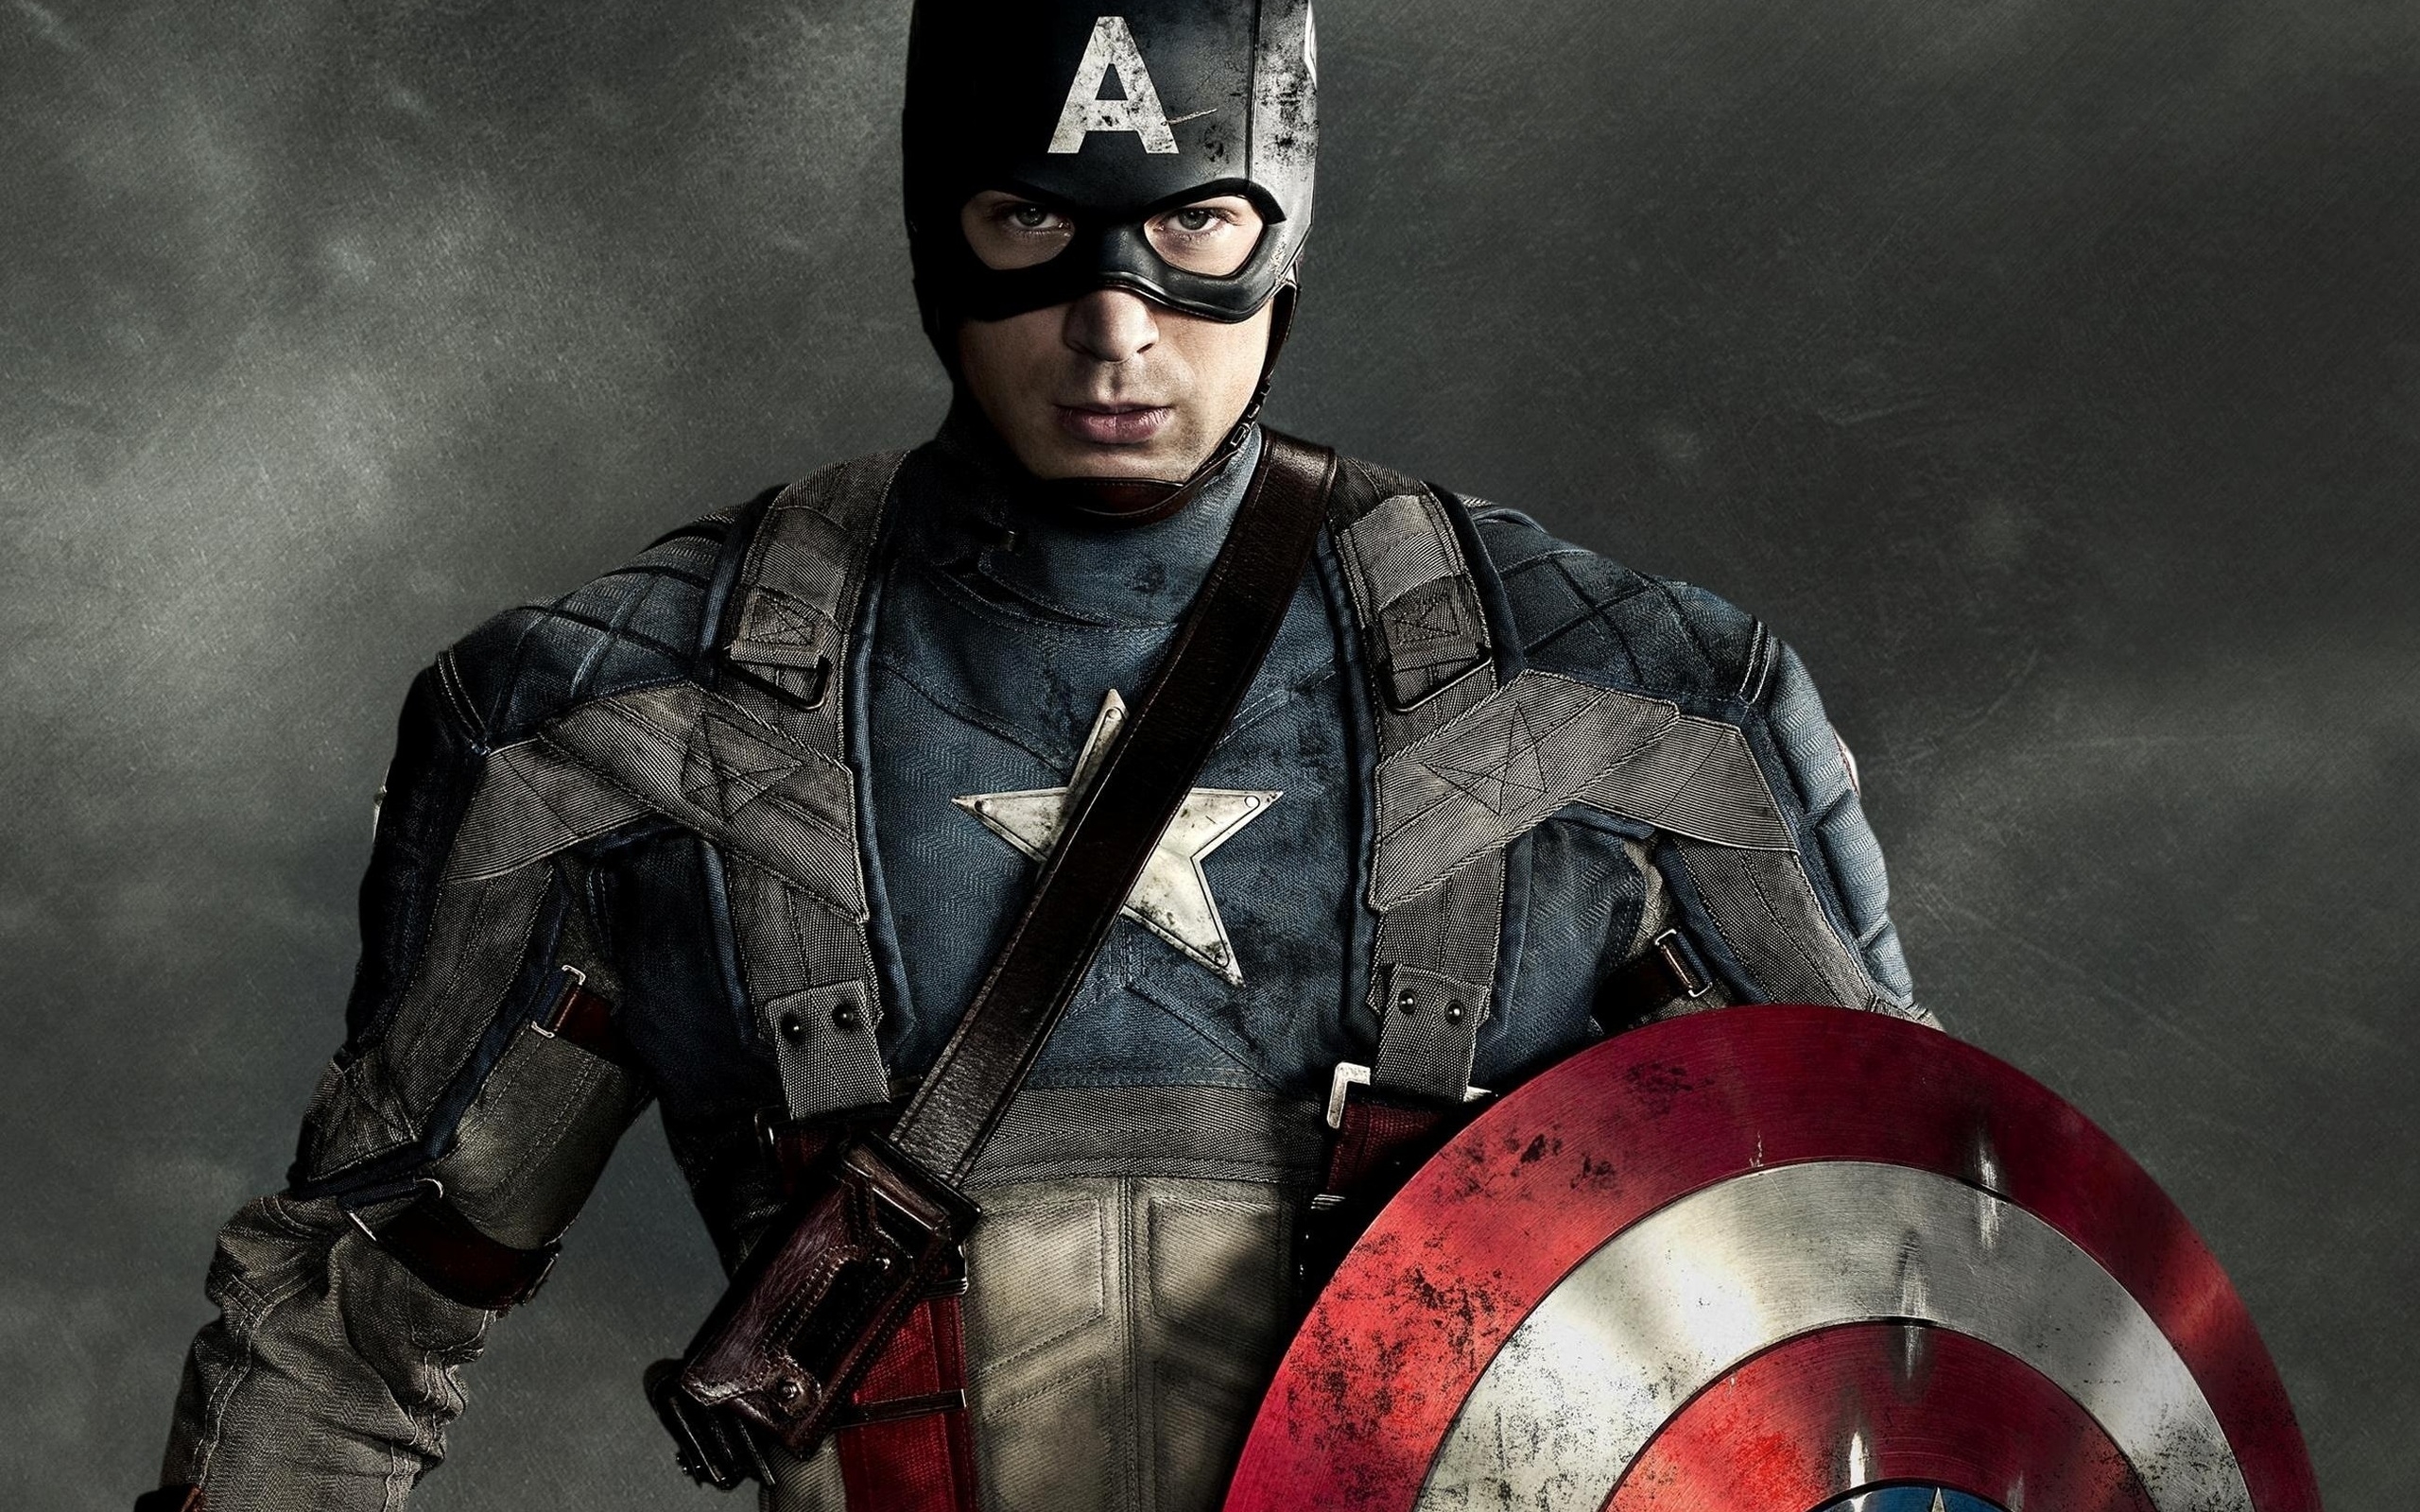 WEBSITE: Captain America (2011)...